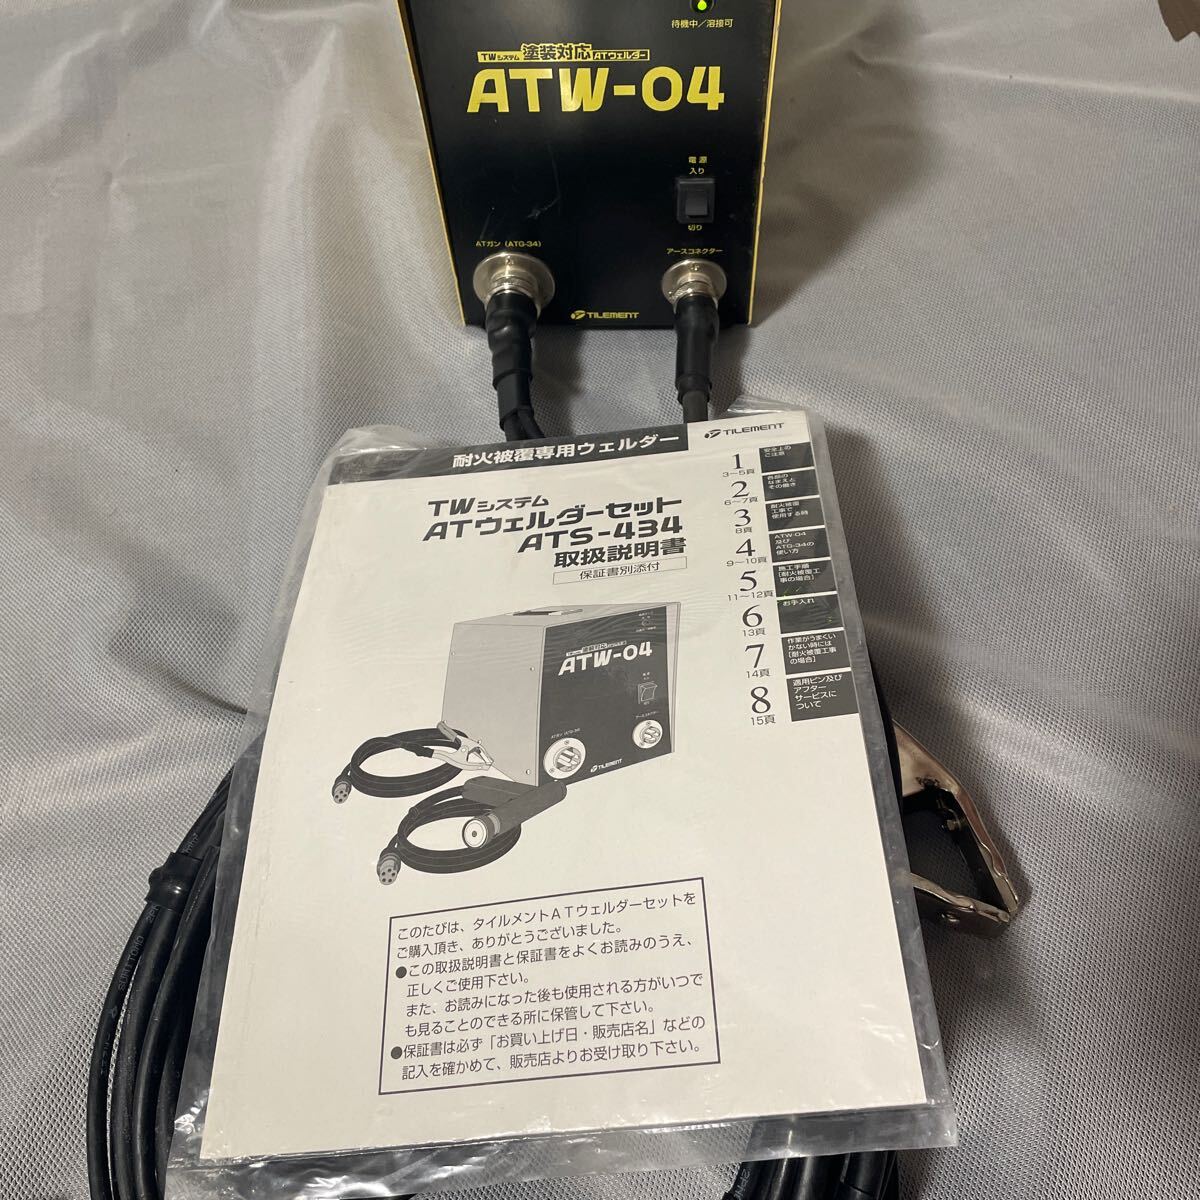  плитка men toTW система ATveruda- комплект ATS-434 есть руководство пользователя 